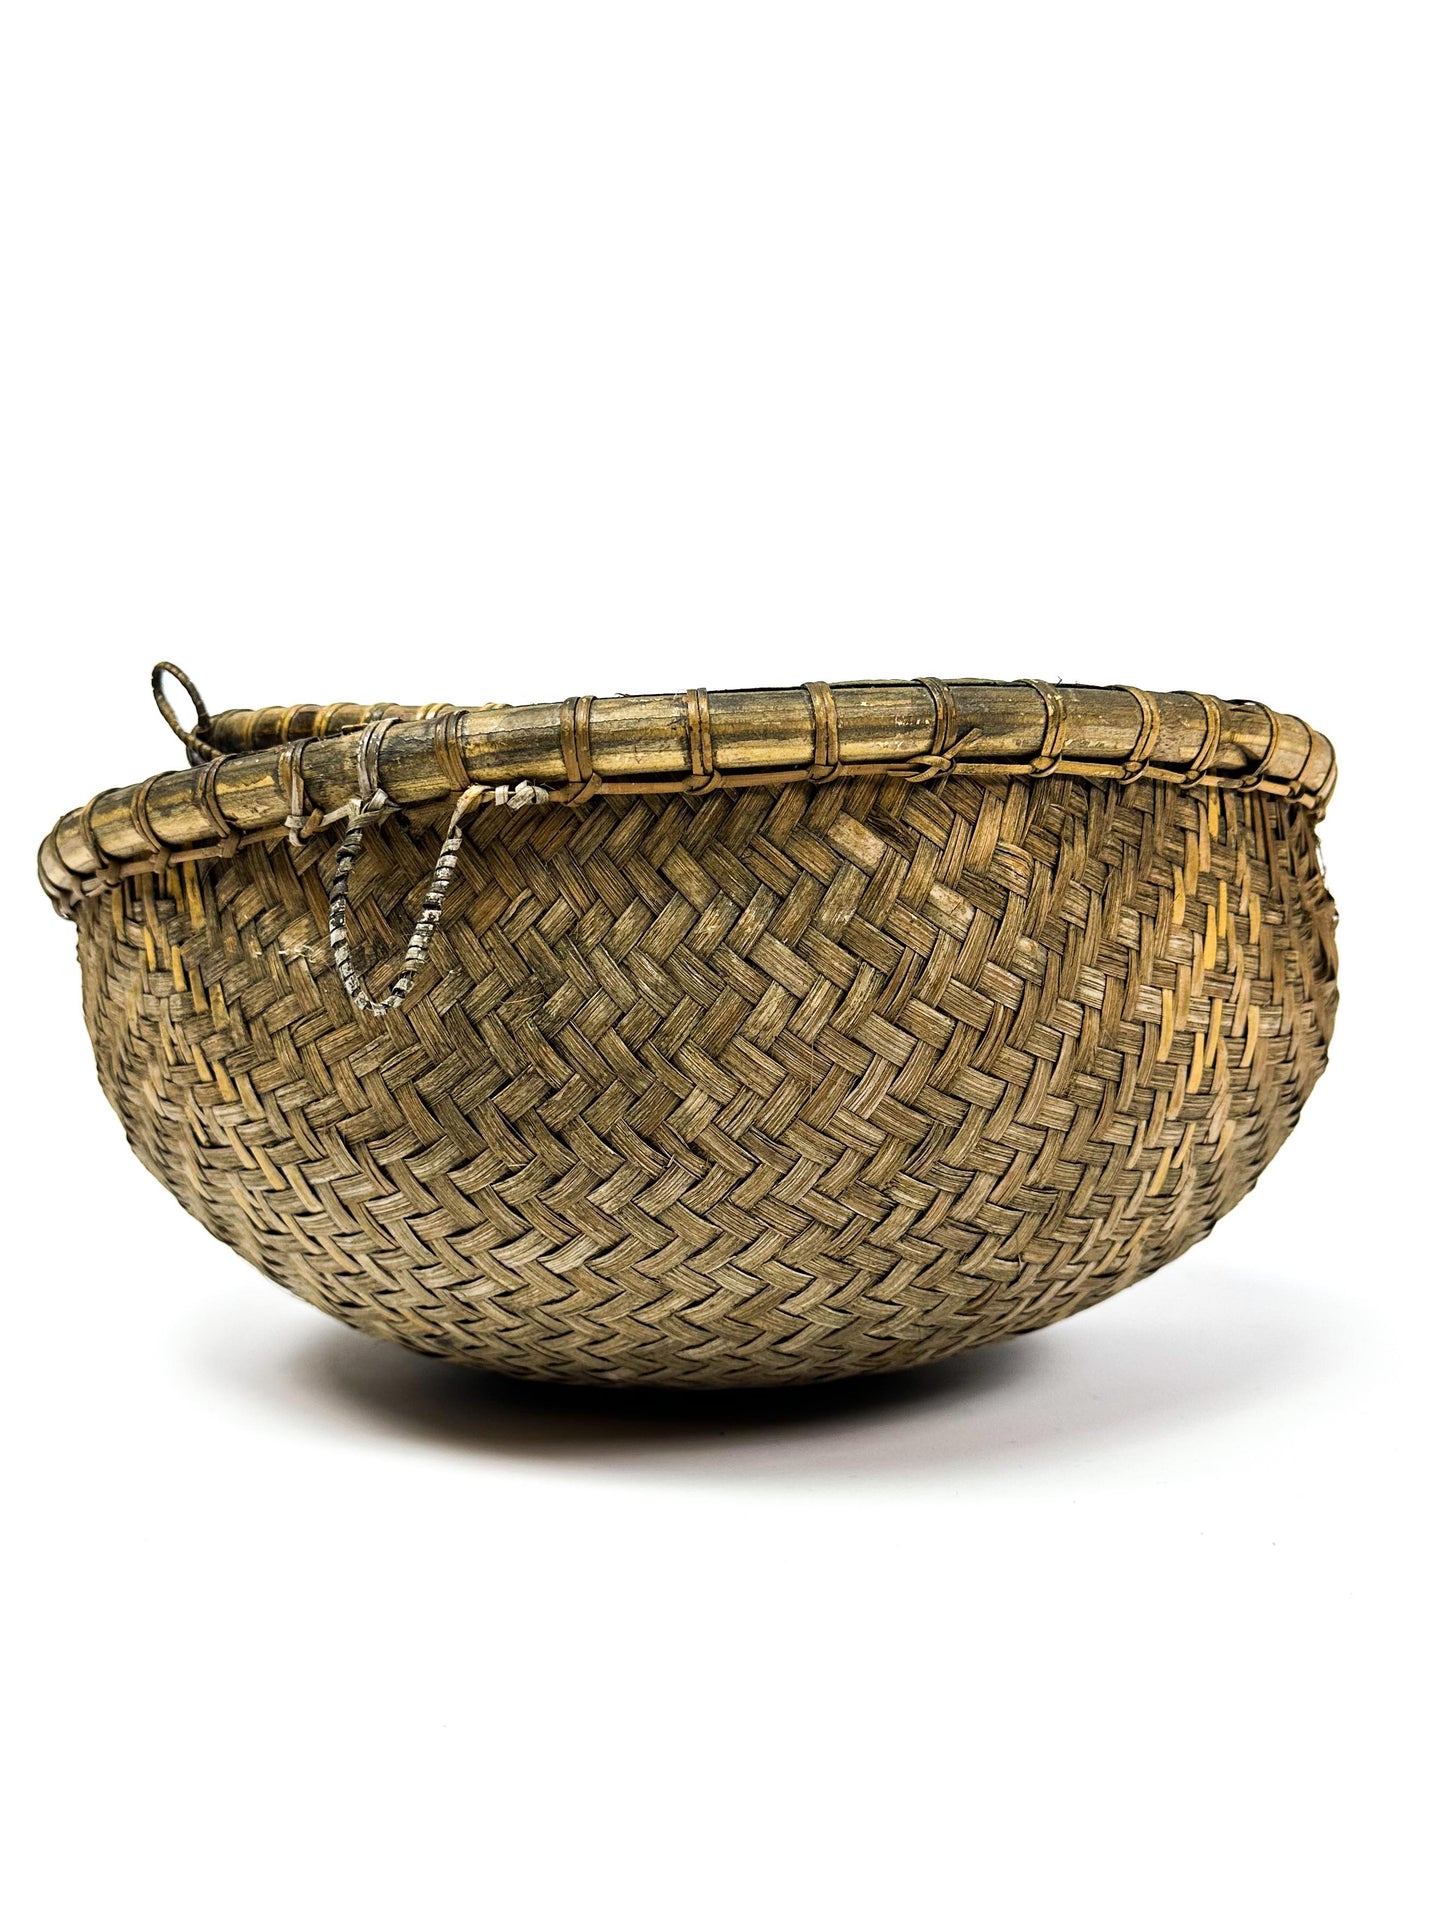 rice basket